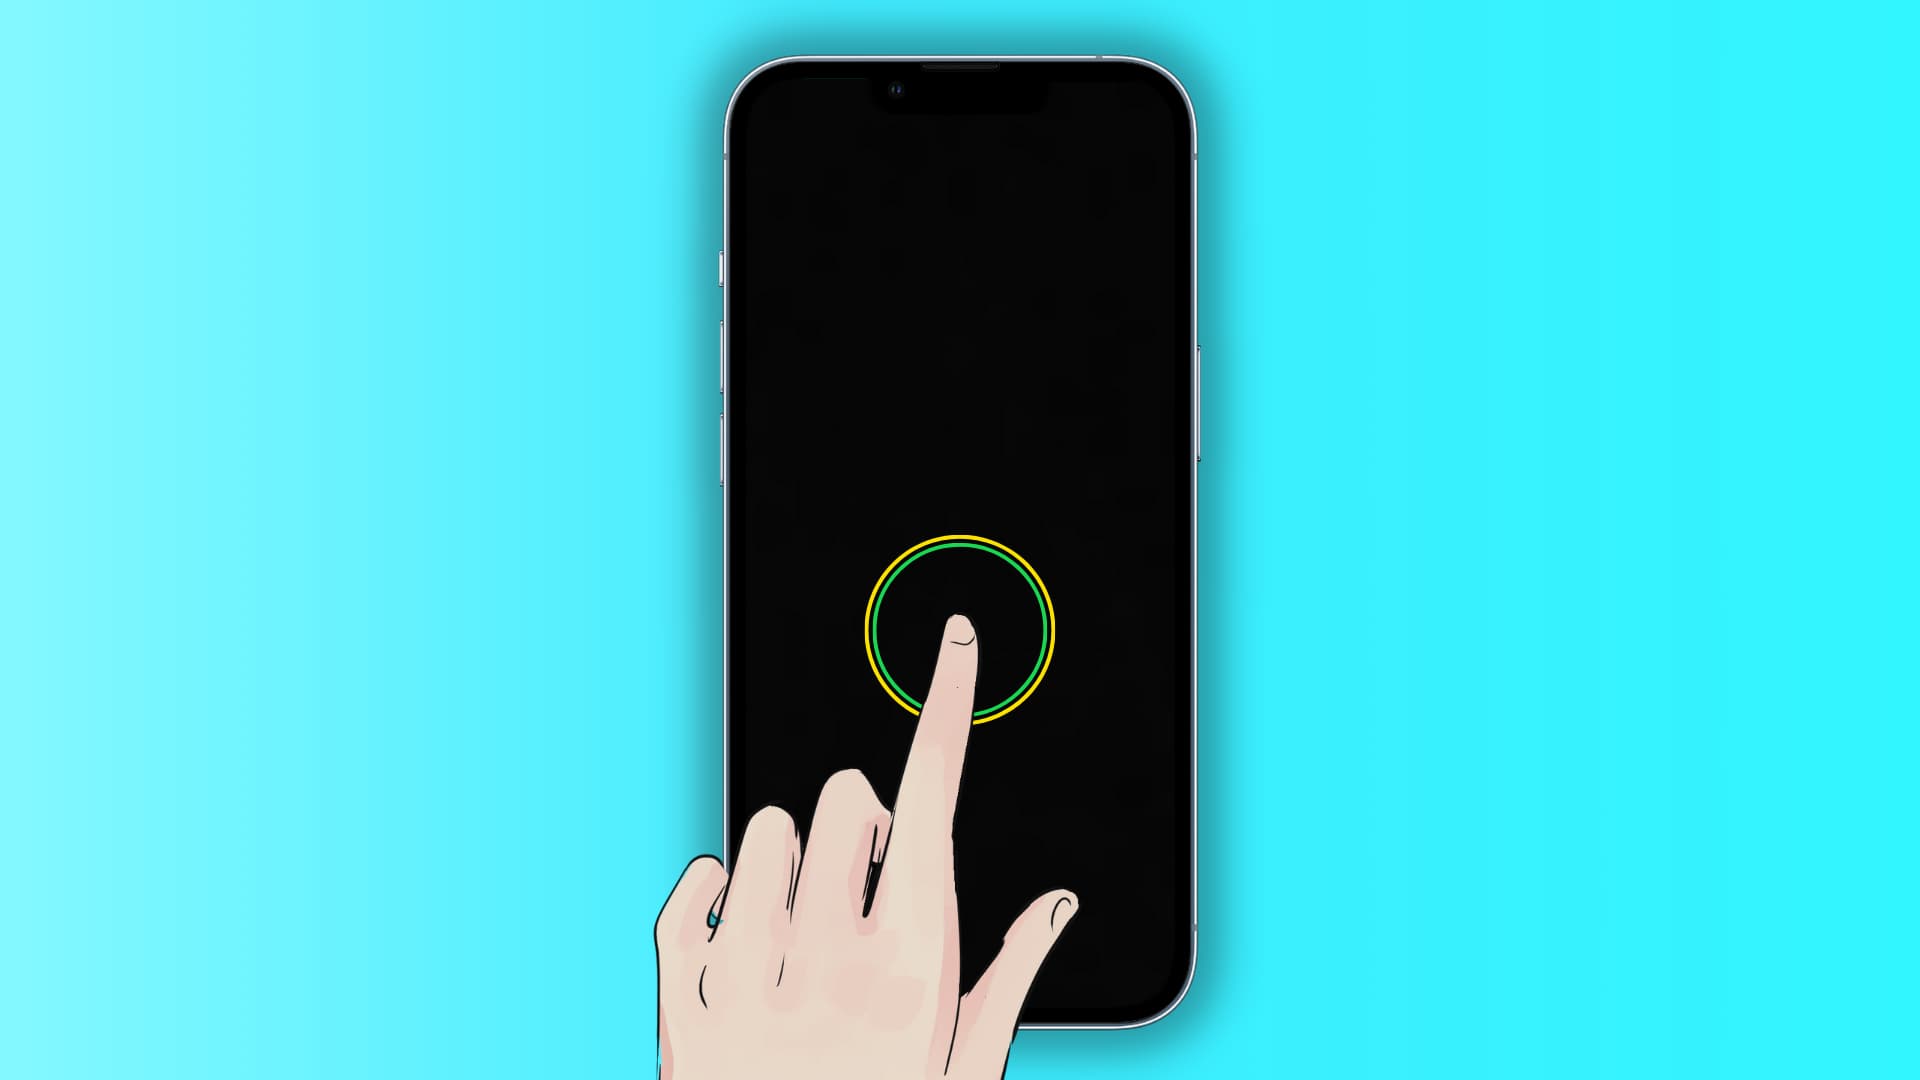 Illustration d'un iPhone verrouillé montrant l'écran de verrouillage noir et un doigt tapotant l'écran pour le réactiver